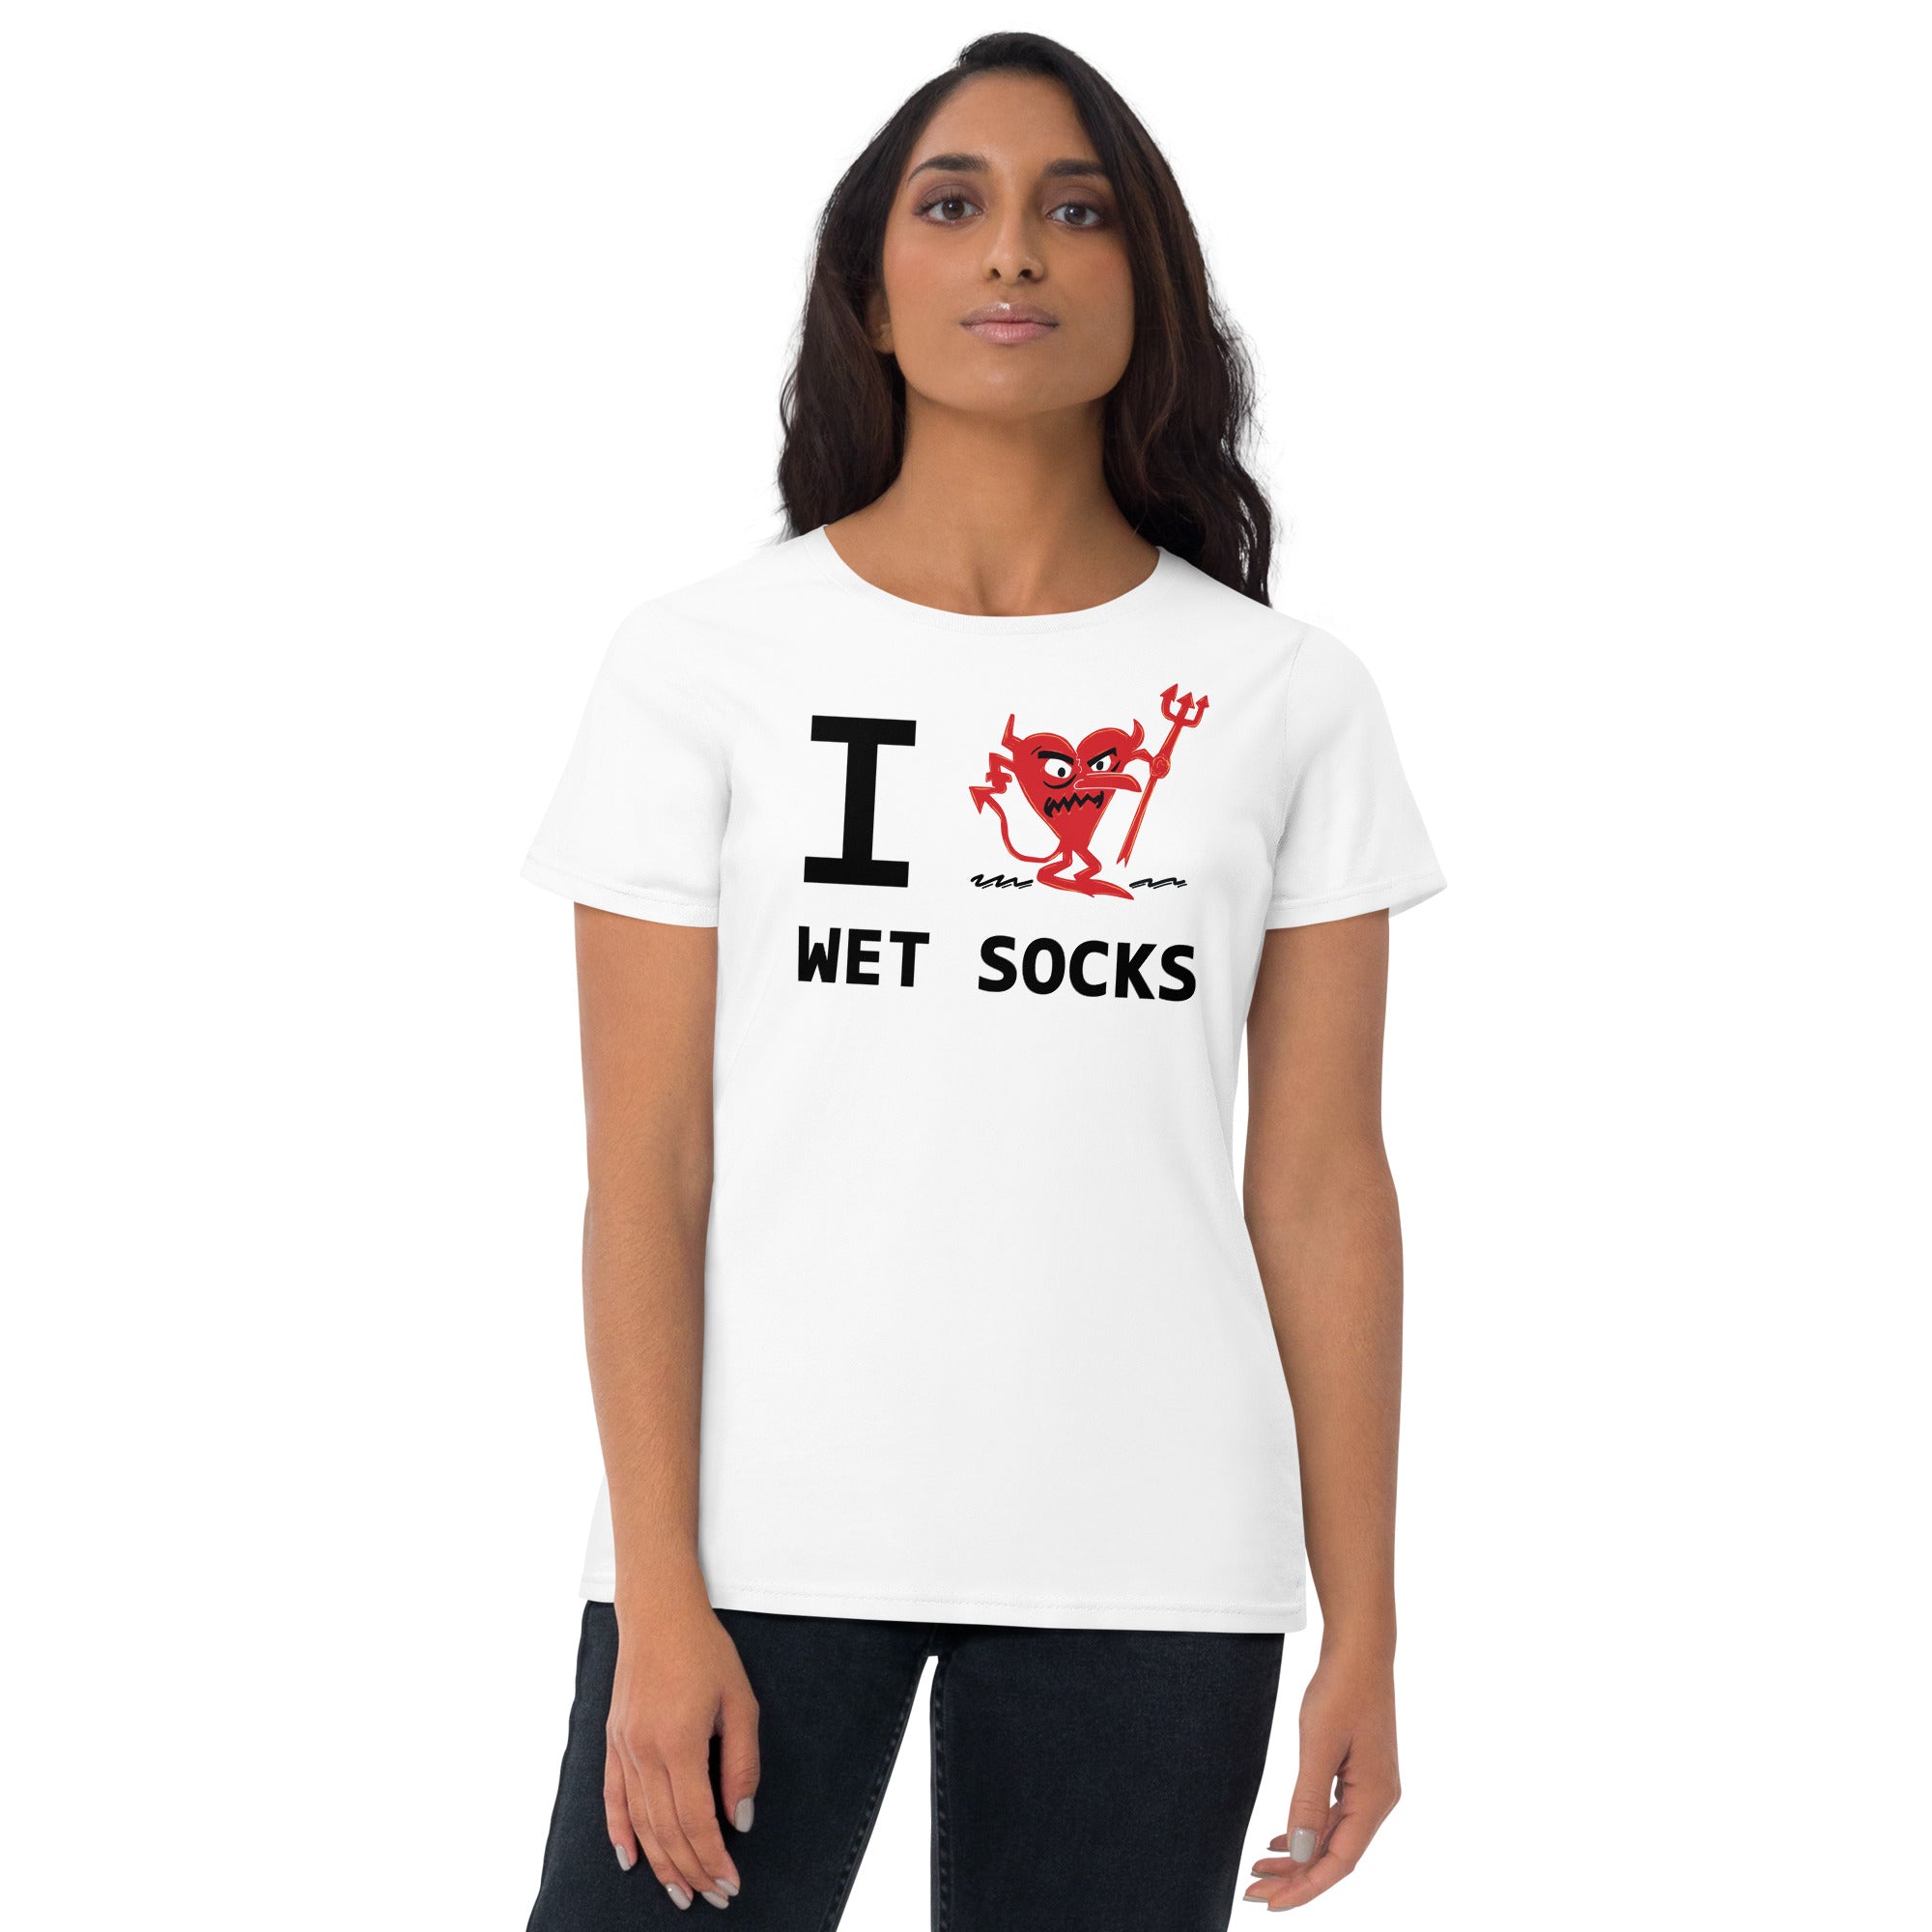 WET SOCKS Women's short sleeve t-shirt